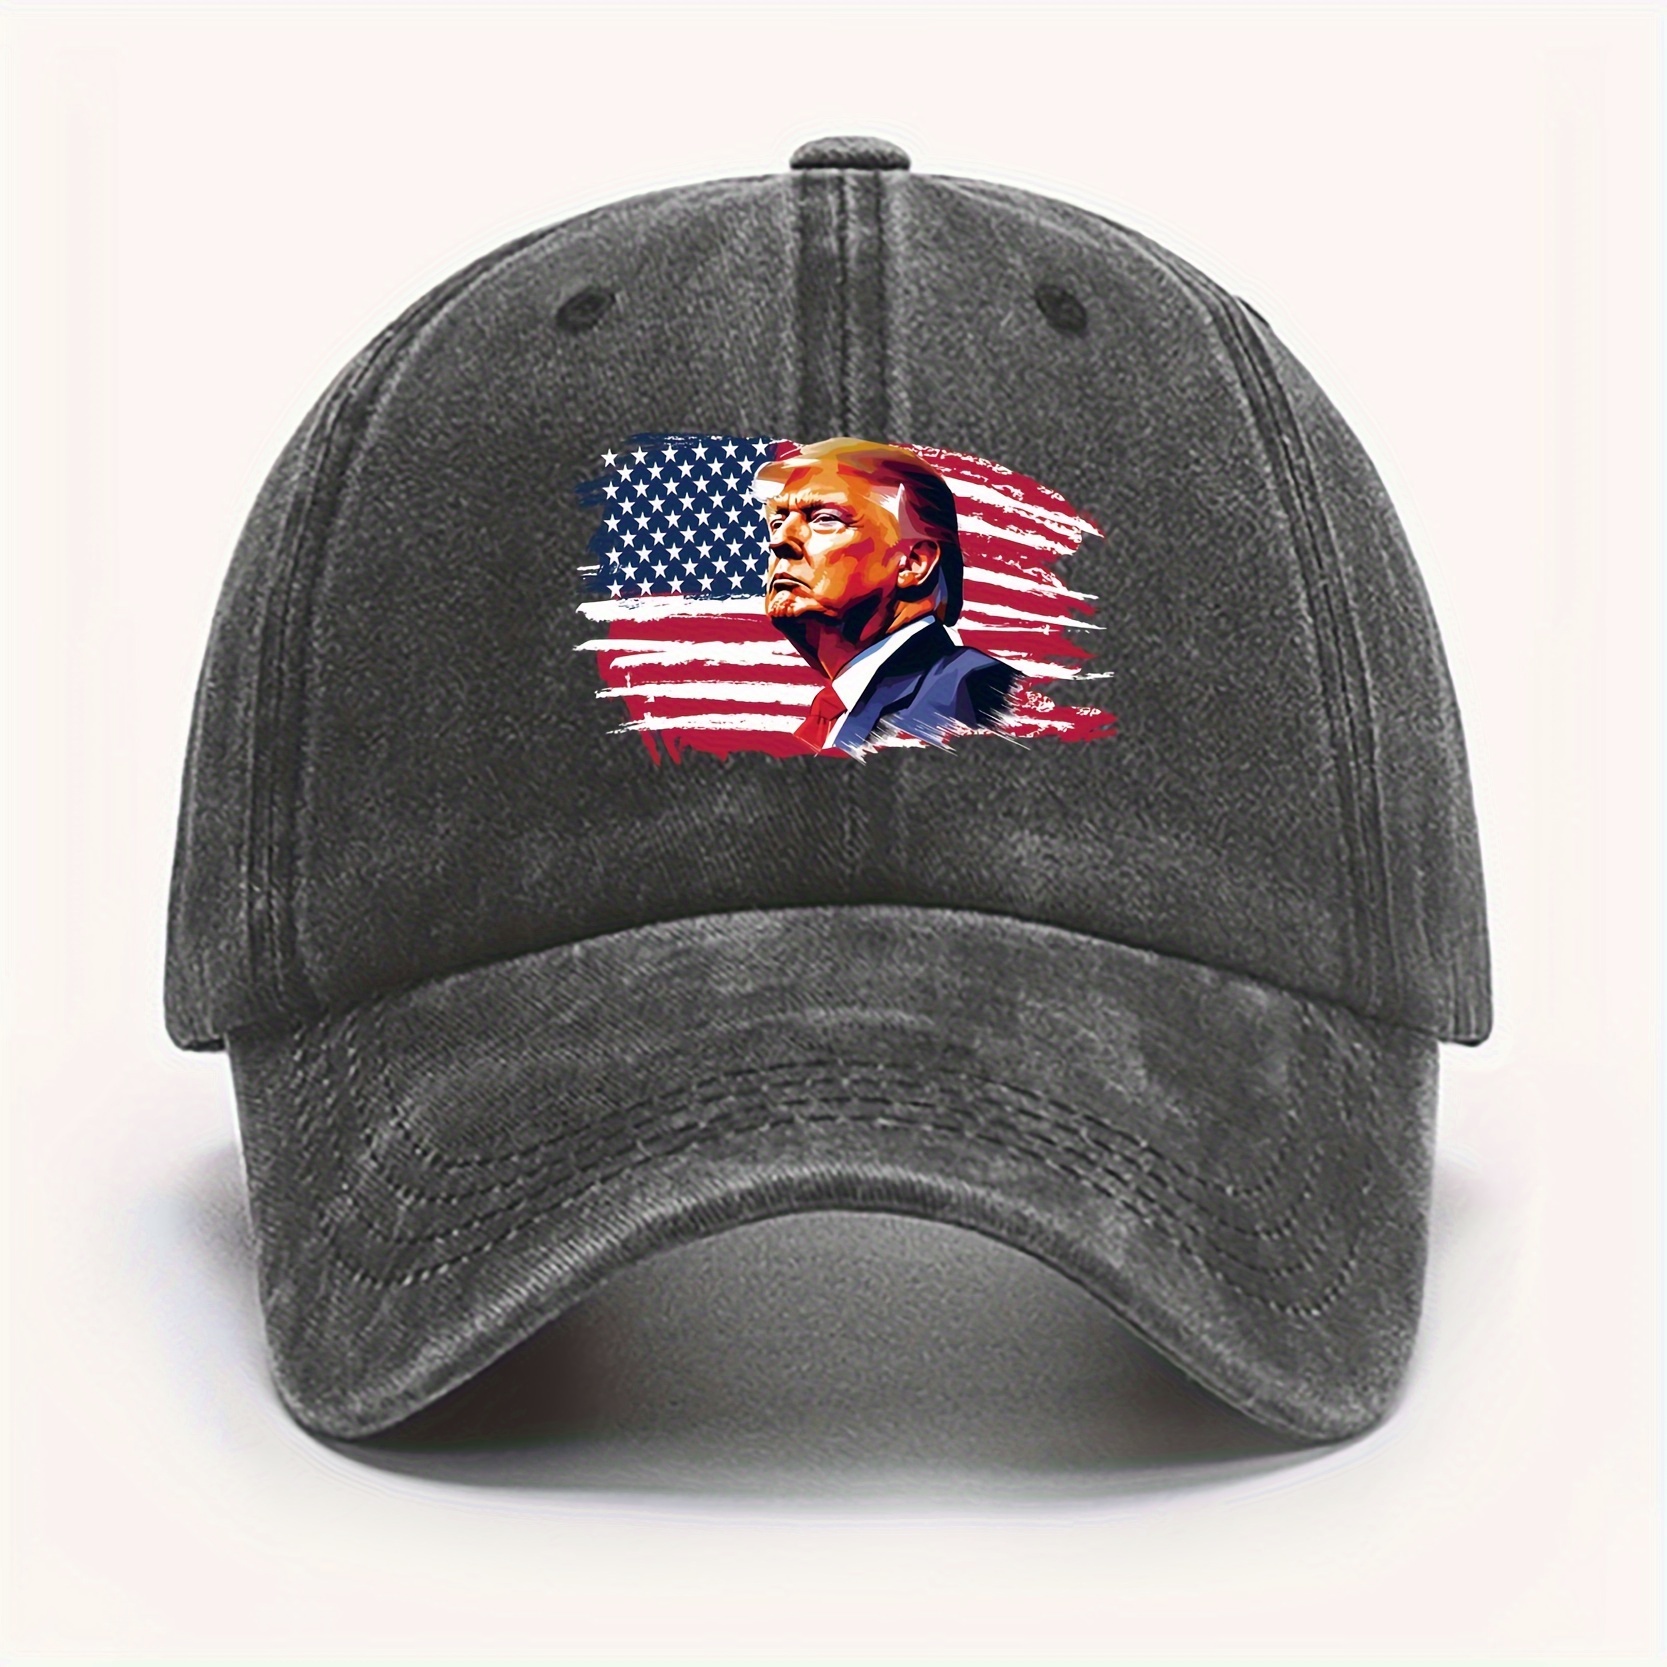 American Flag Trucker Hat - Snapback Hat, Baseball Cap for Men